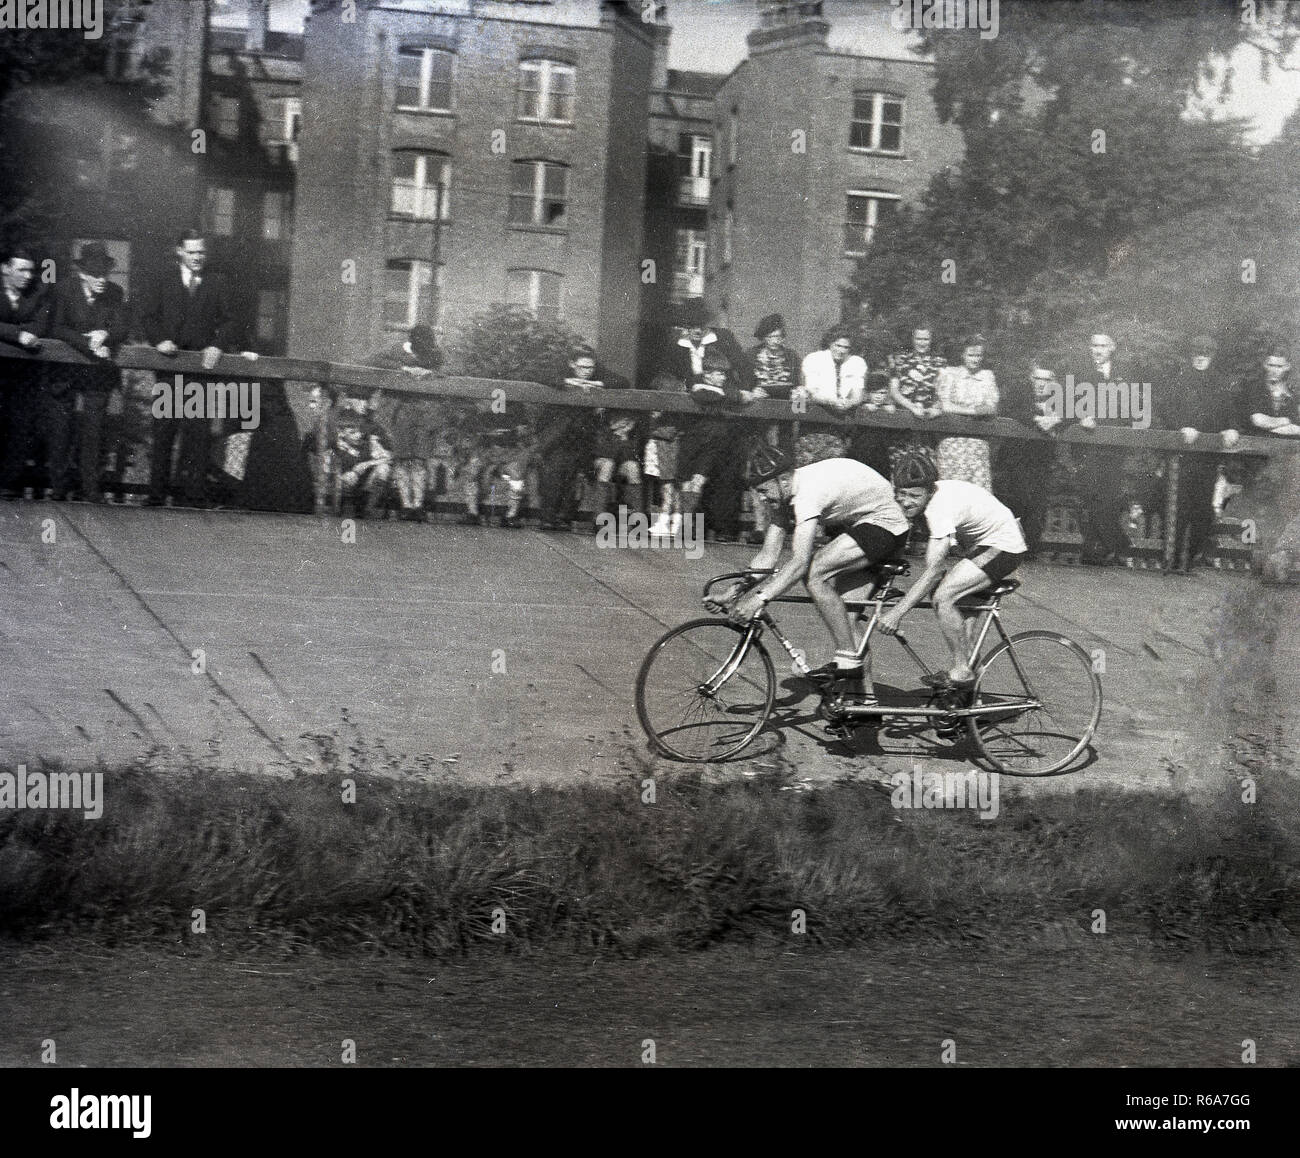 1940s, storico, due corridori ciclisti su un tandem bike fuori in una gara ciclistica su un calcestruzzo rialzata in via, guardato dagli spettatori in piedi dietro un recinto, Inghilterra, Regno Unito. Foto Stock